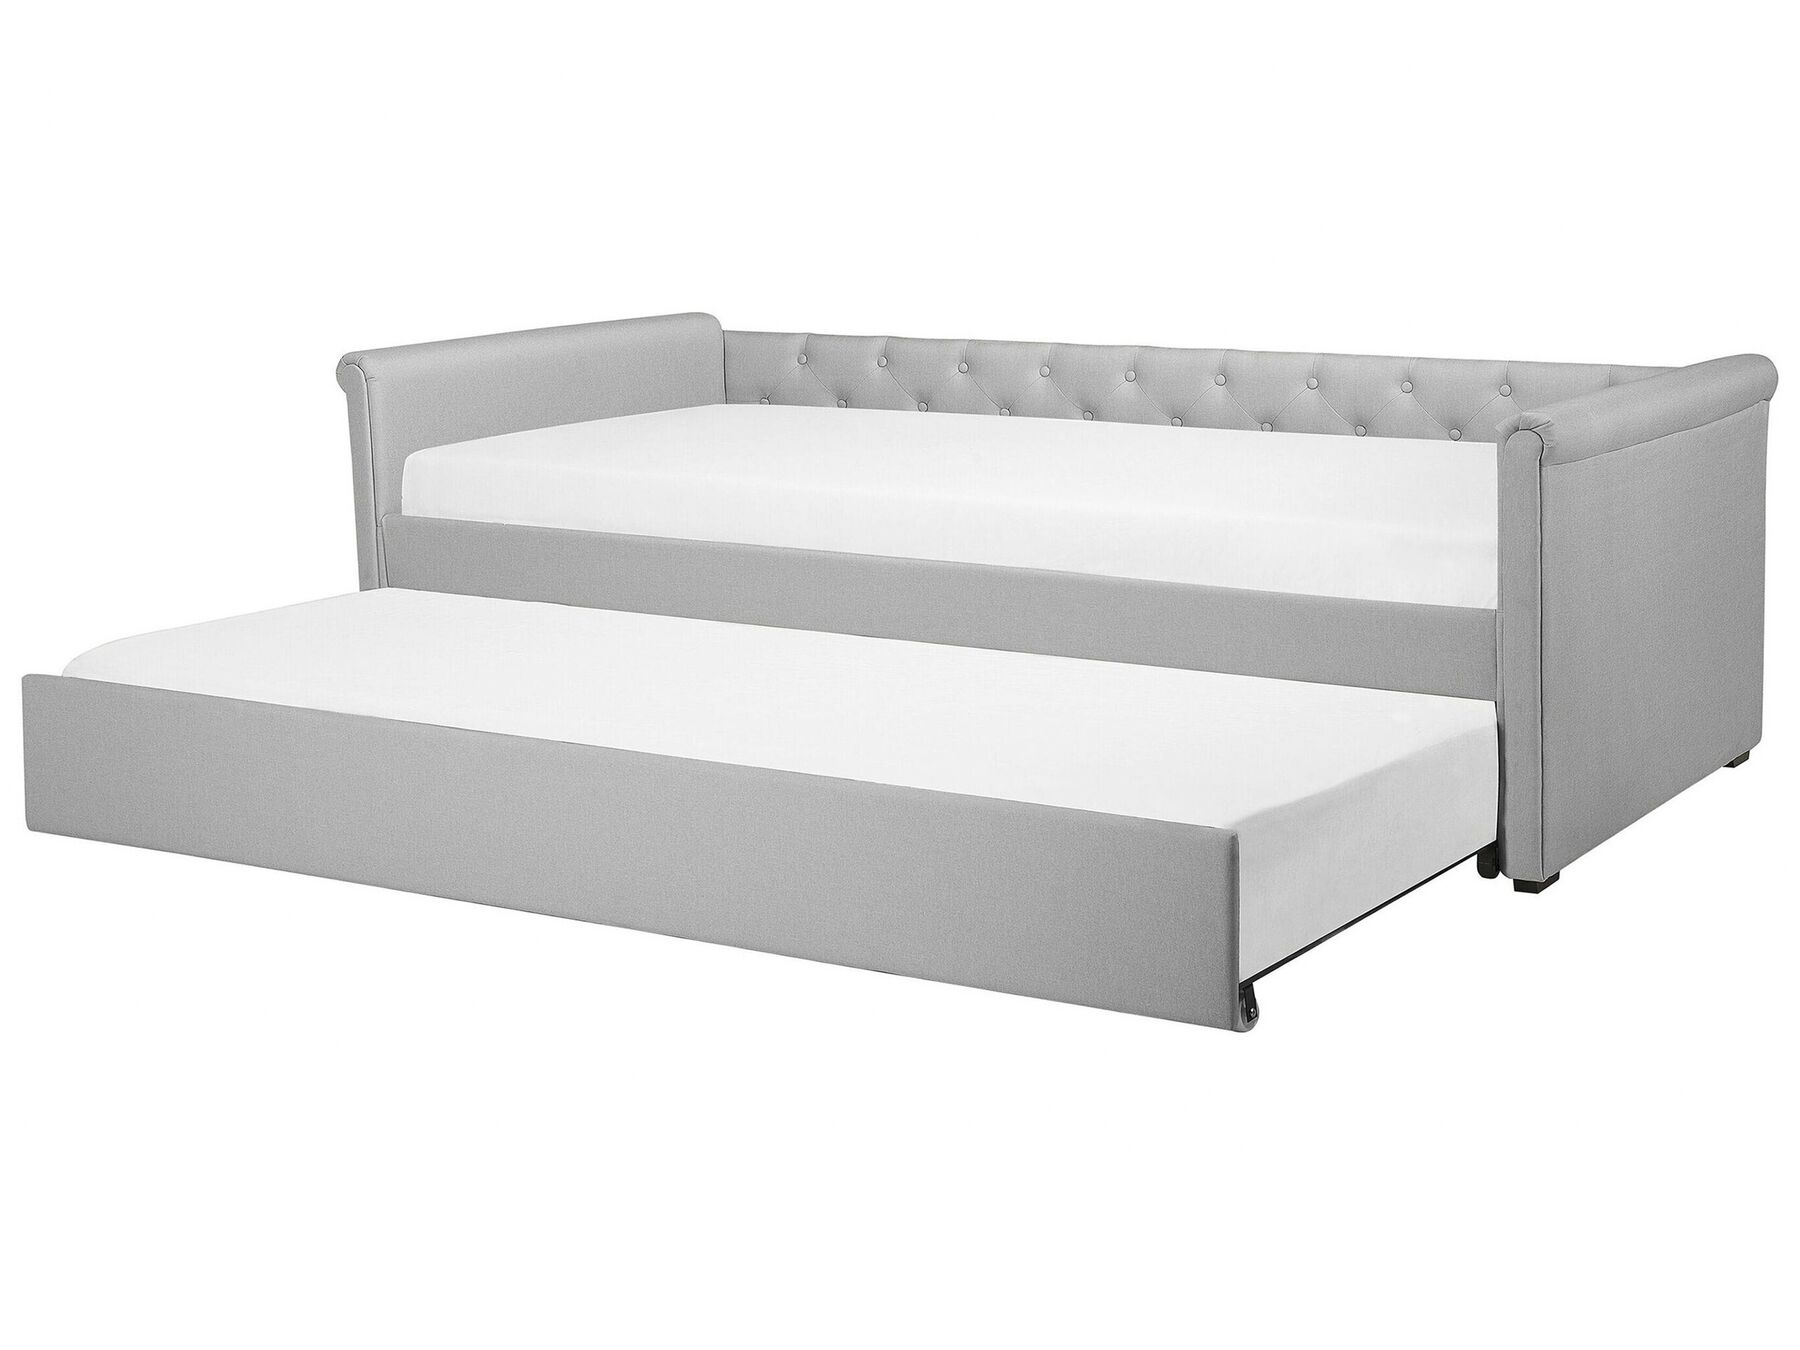 Rozkládací čalouněná postel 80 x 200 cm světlé šedá LIBOURNE_770662